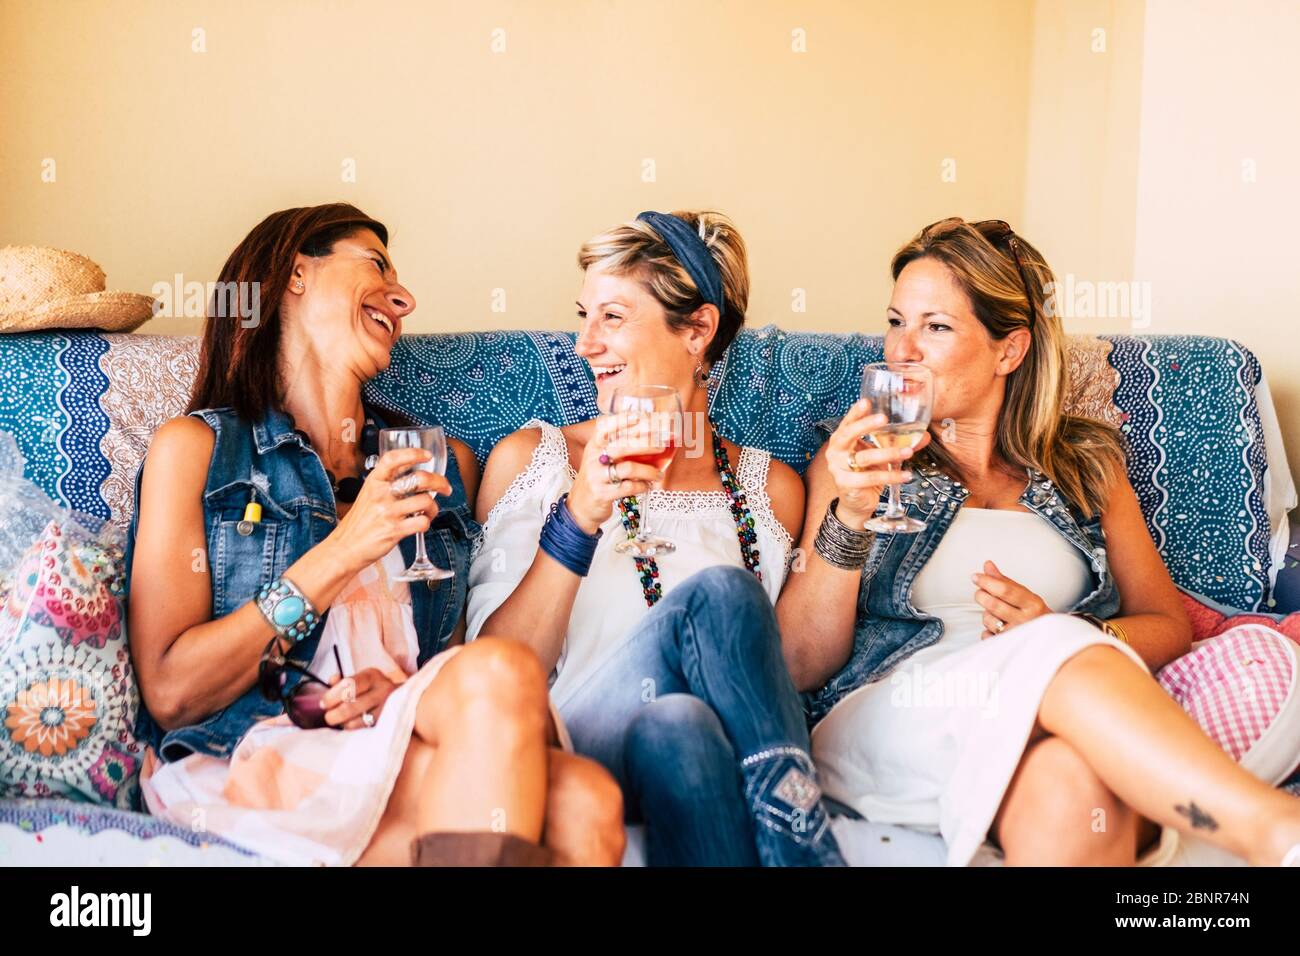 Gruppo di giovani donne adulte di mezza età che si divertono insieme a tostare e a sorseggiare bicchieri di vino sulla spiaggia durante un tramonto dorato godendo di attività ricreative all'aperto o di una vacanza Foto Stock